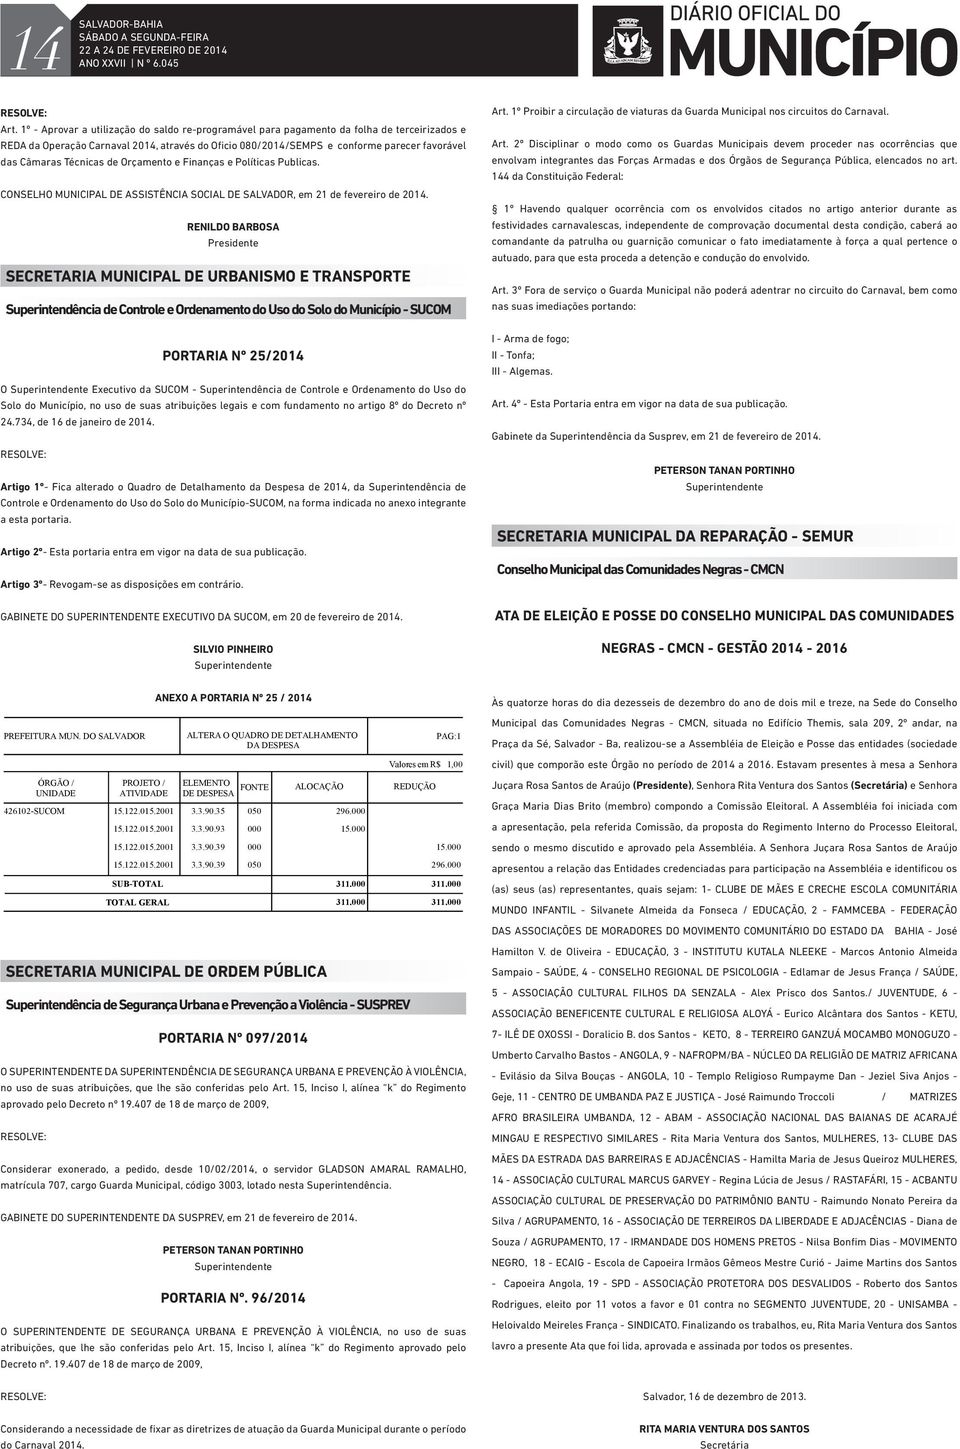 Técnicas de Orçamento e Finanças e Políticas Publicas. CONSELHO MUNICIPAL DE ASSISTÊNCIA SOCIAL DE SALVADOR, em 21 de fevereiro de 2014.